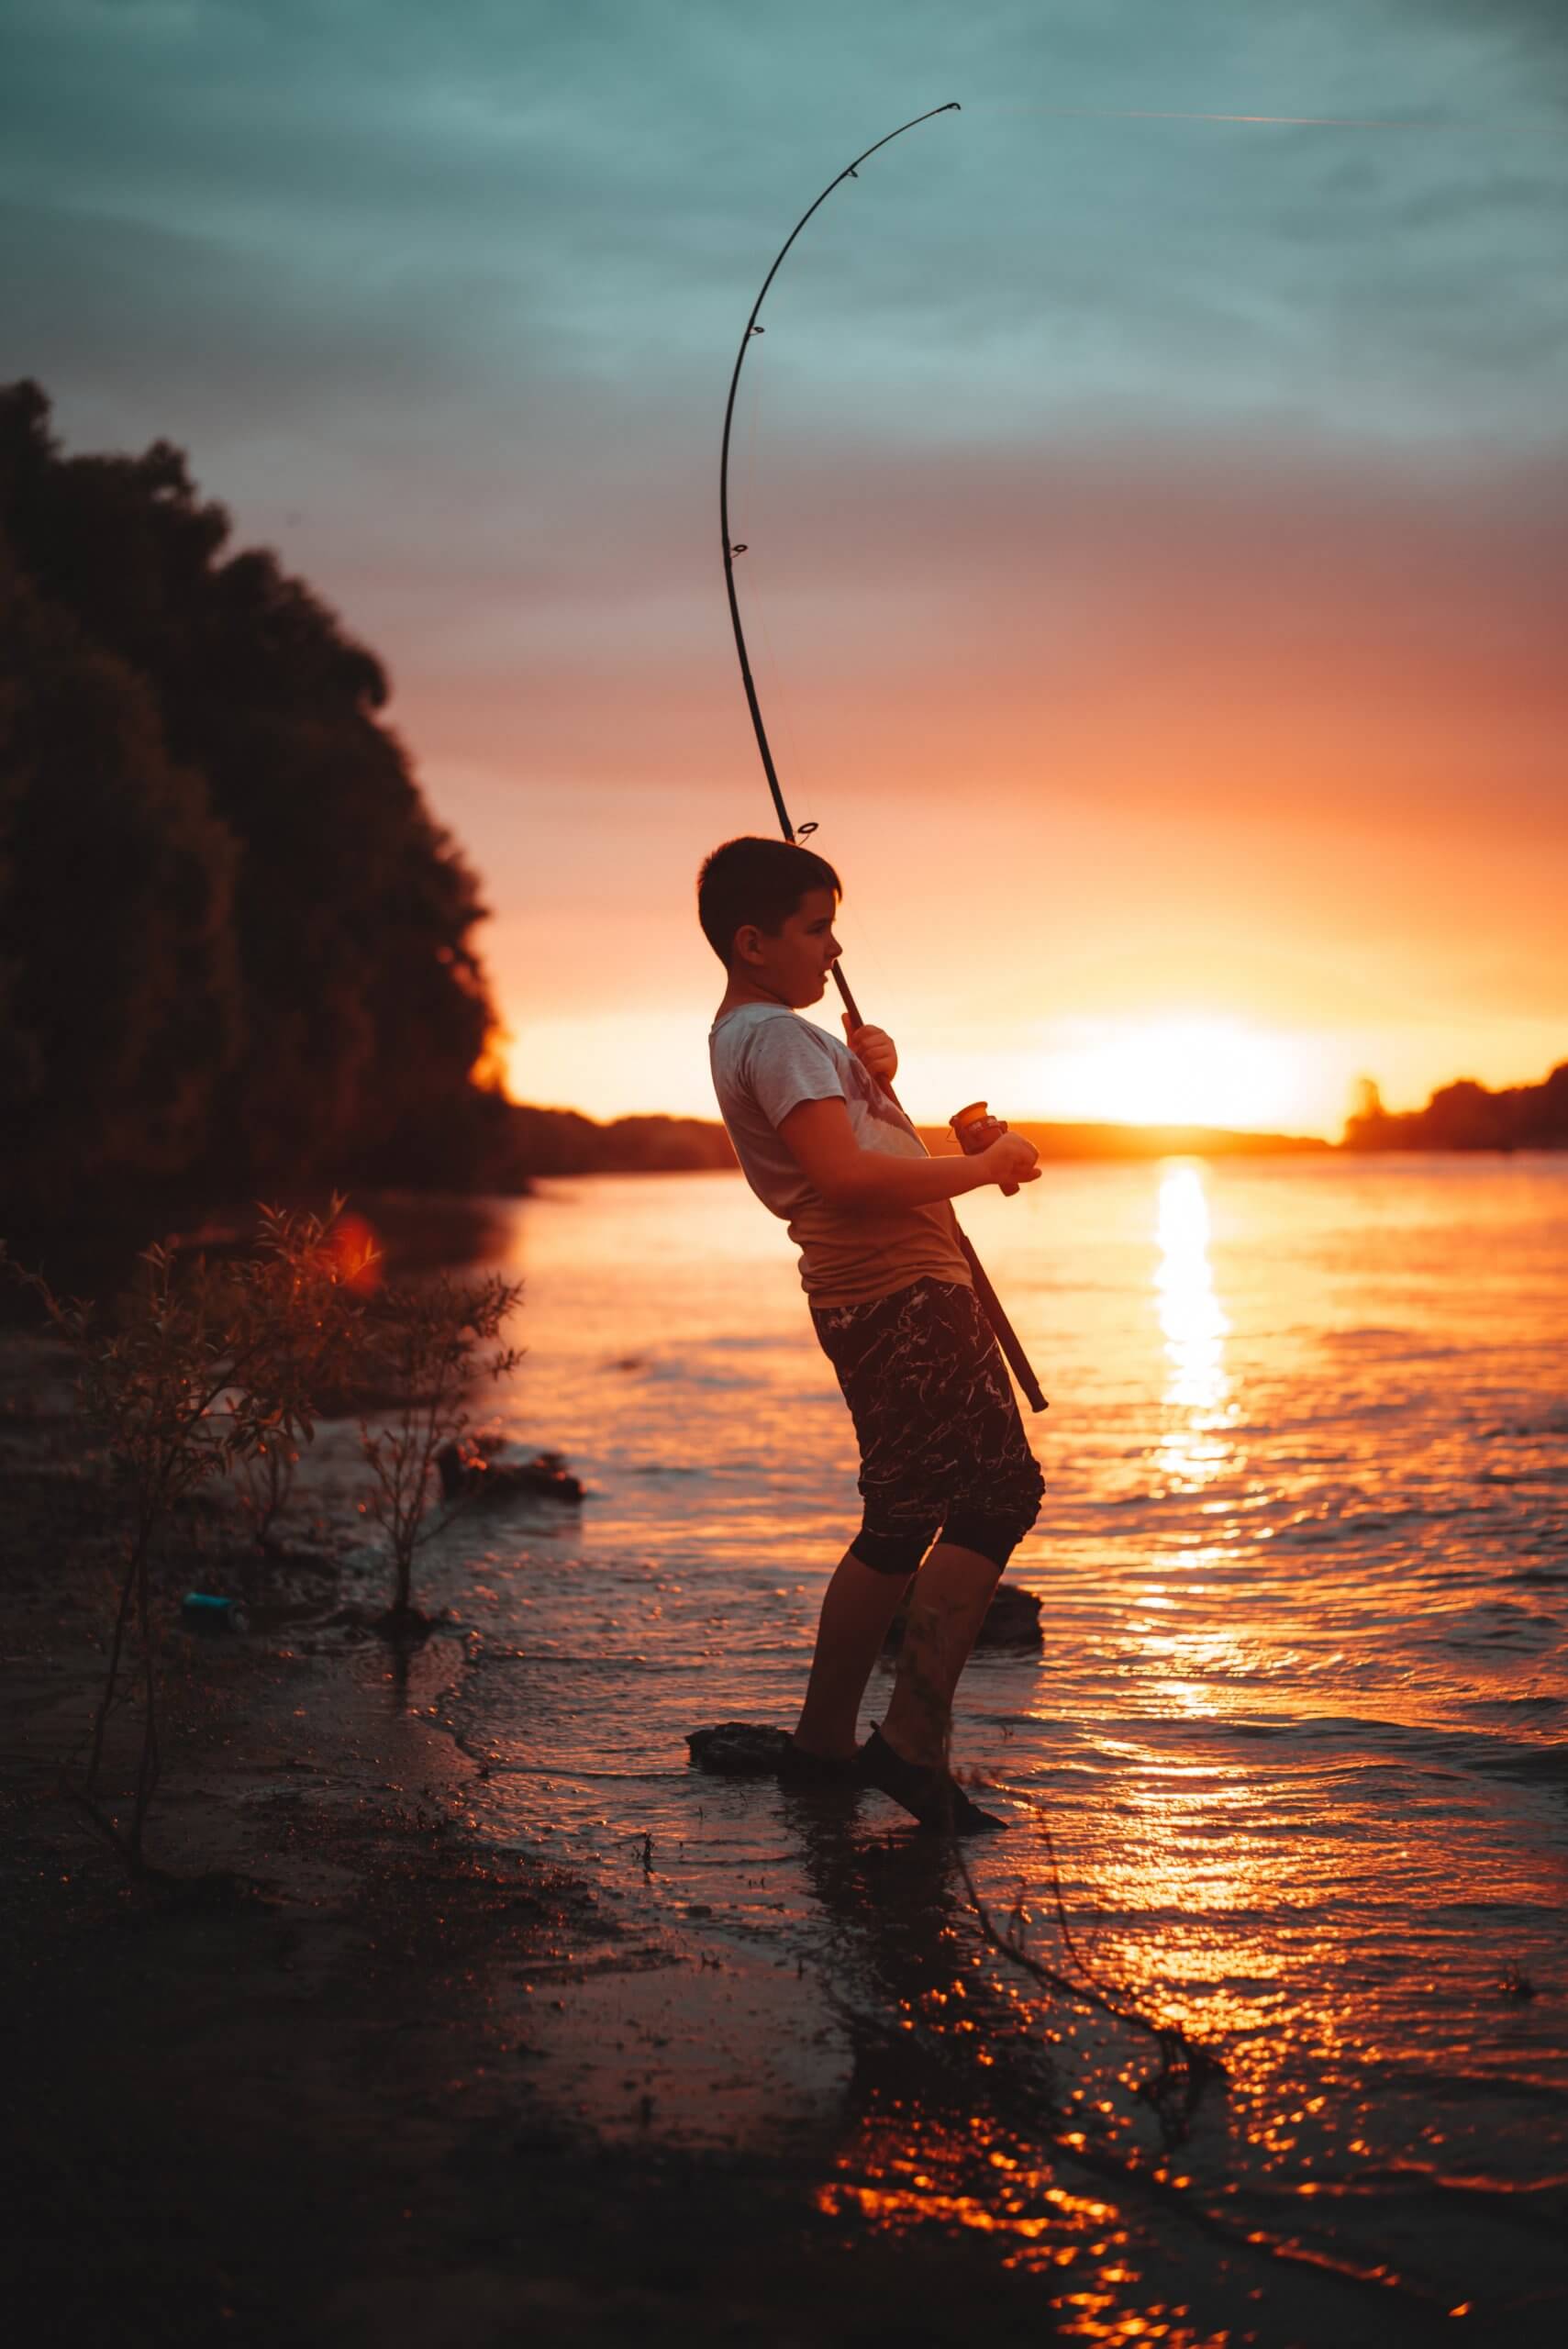 Kid fishing at sunset